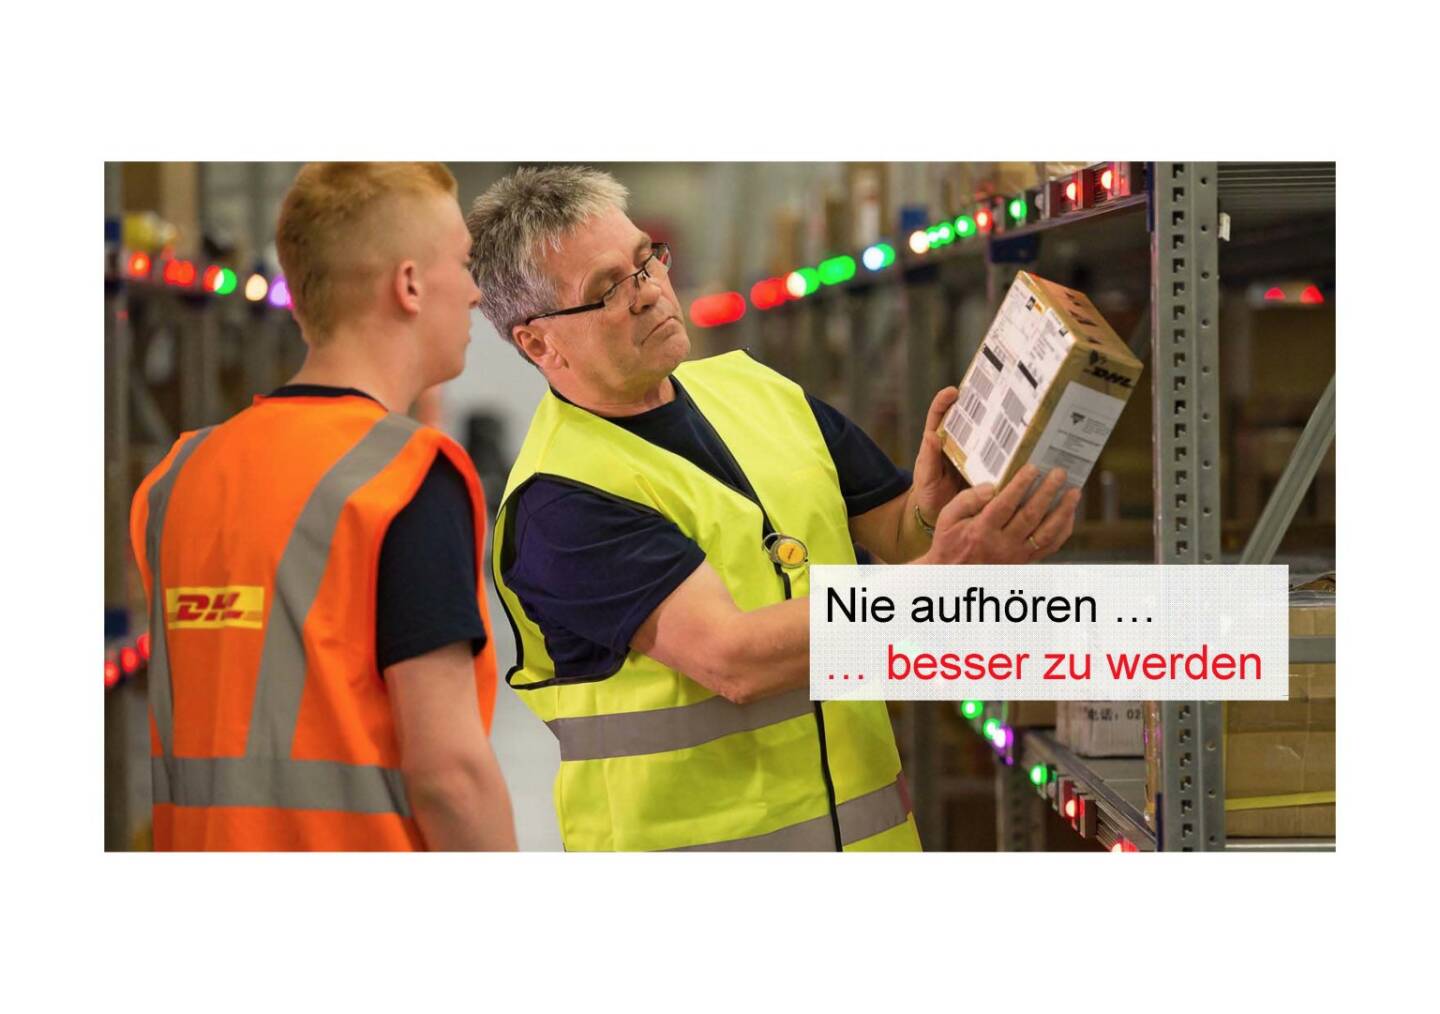 Deutsche Post - Nie aufhören, besser werden